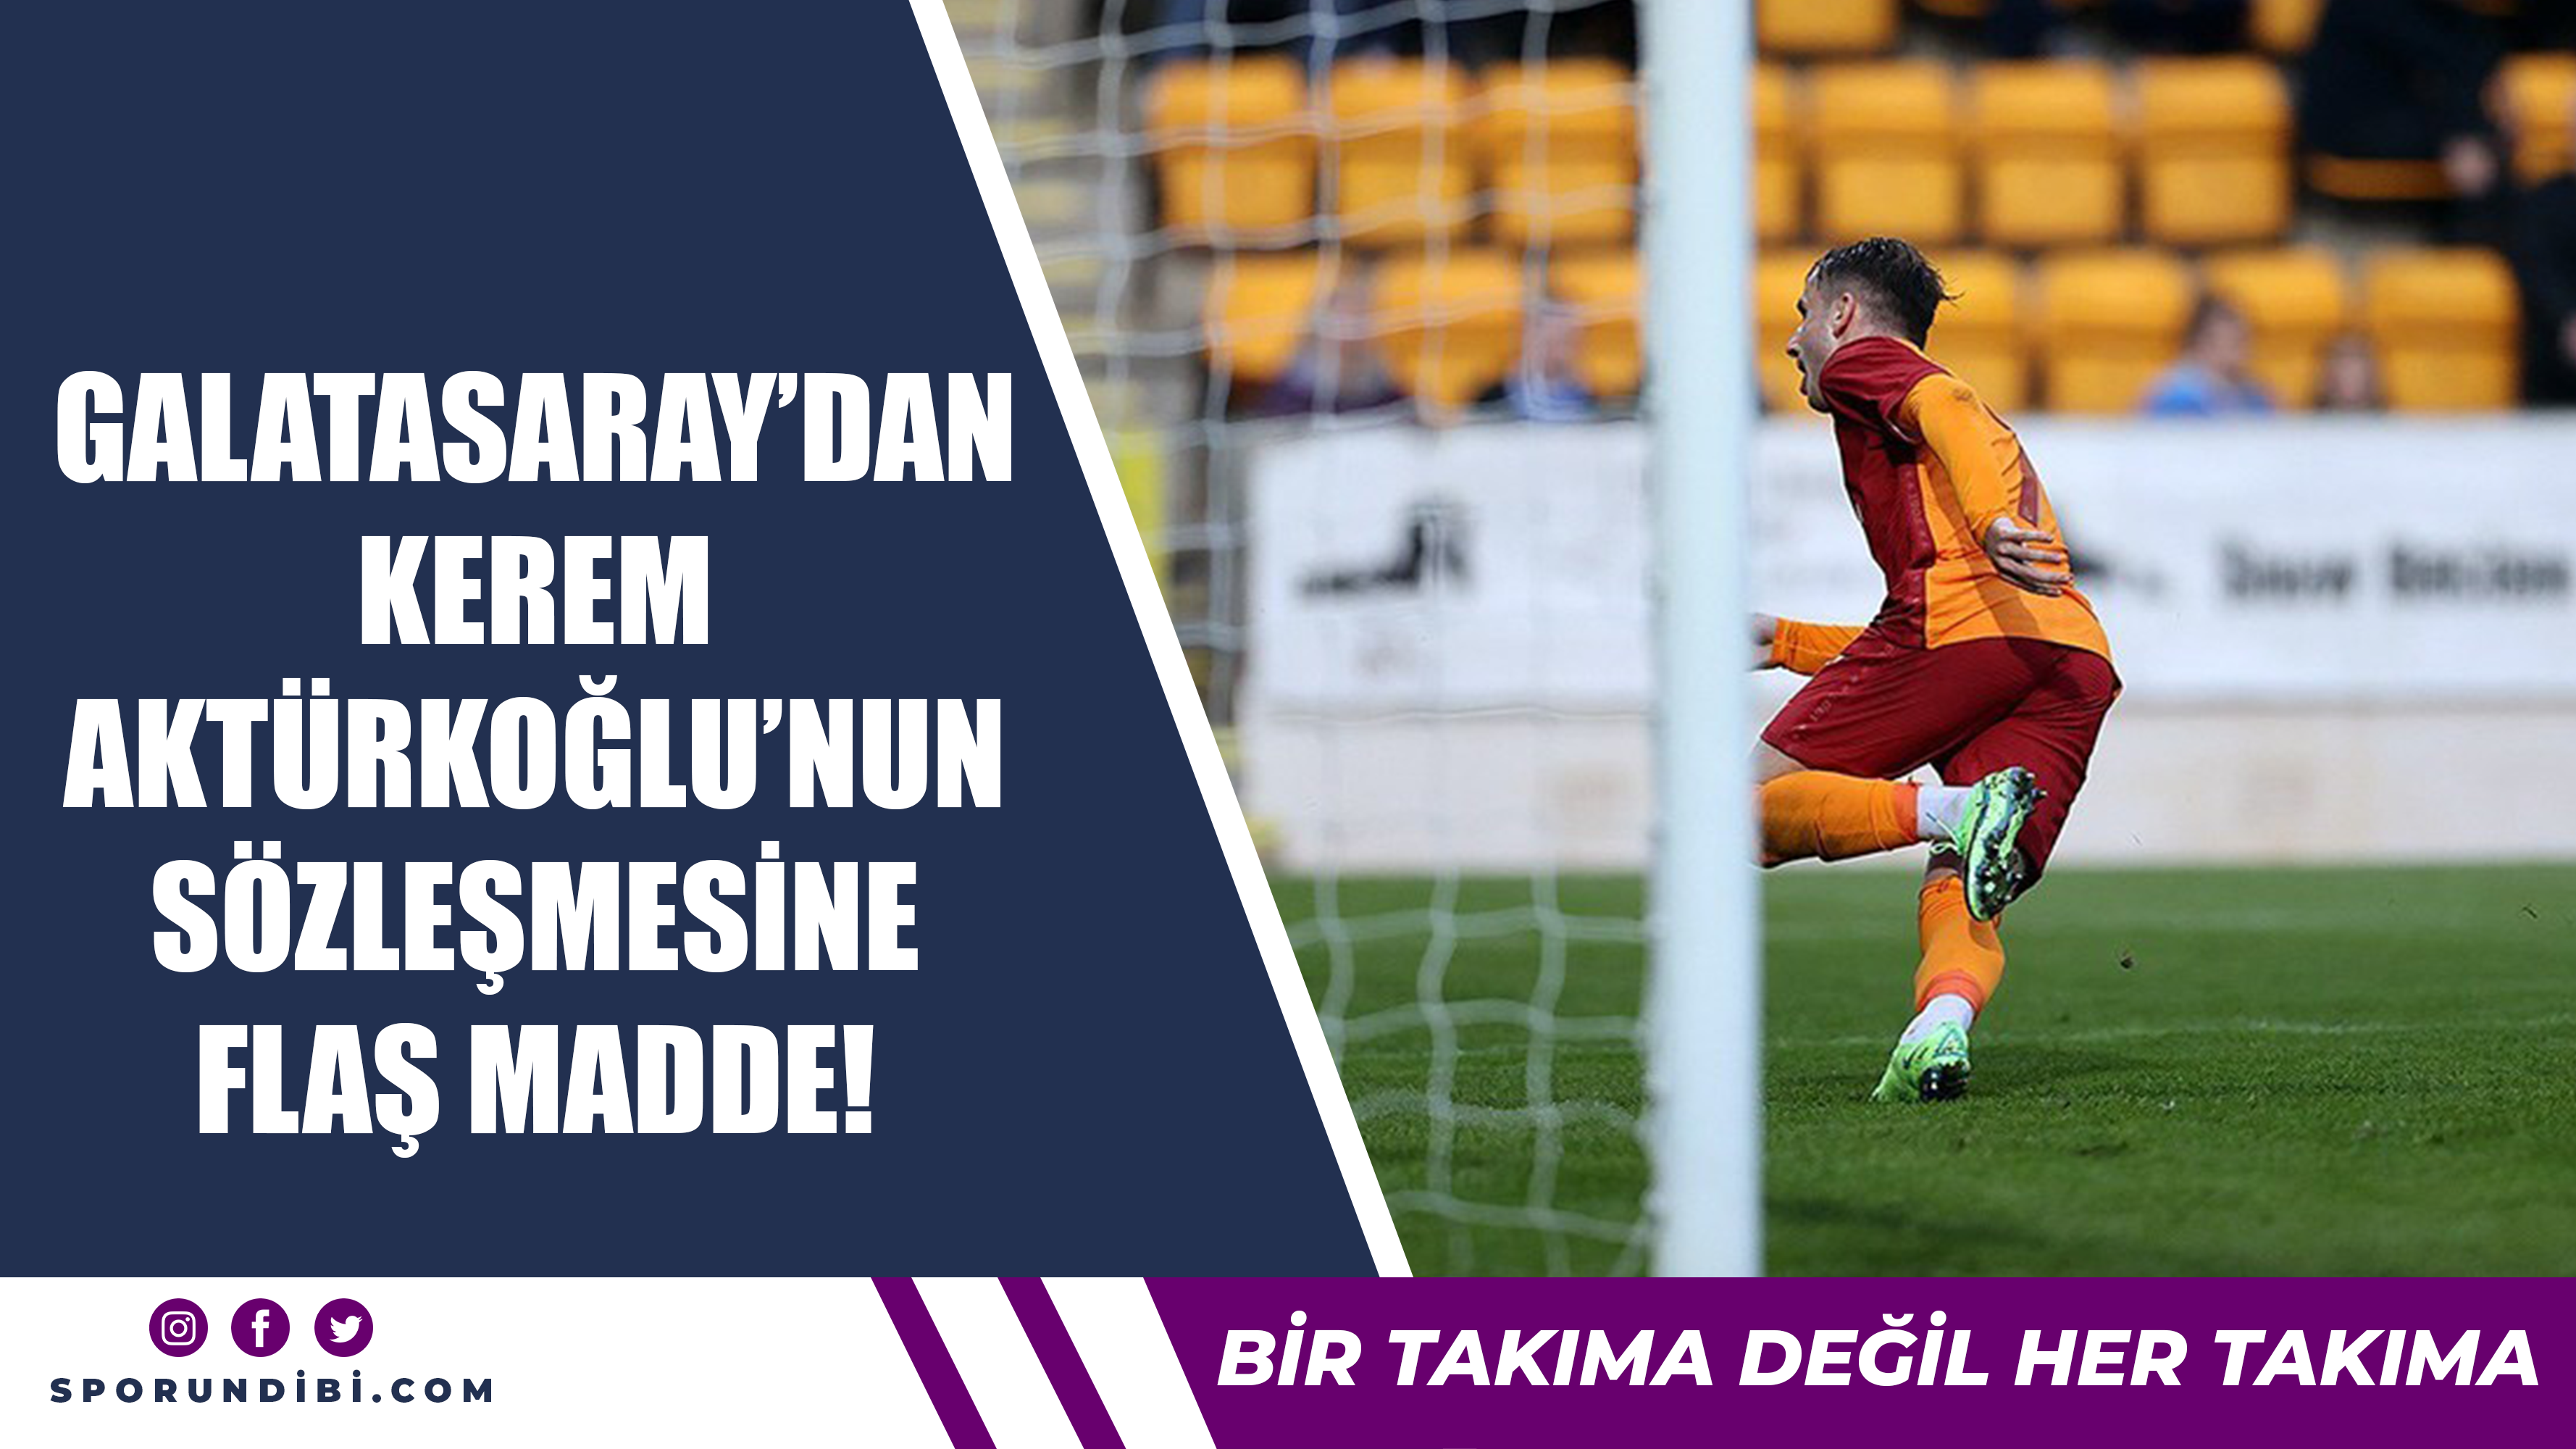 Galatasaray'dan Kerem Aktürkoğlu'nun sözleşmesine flaş madde!